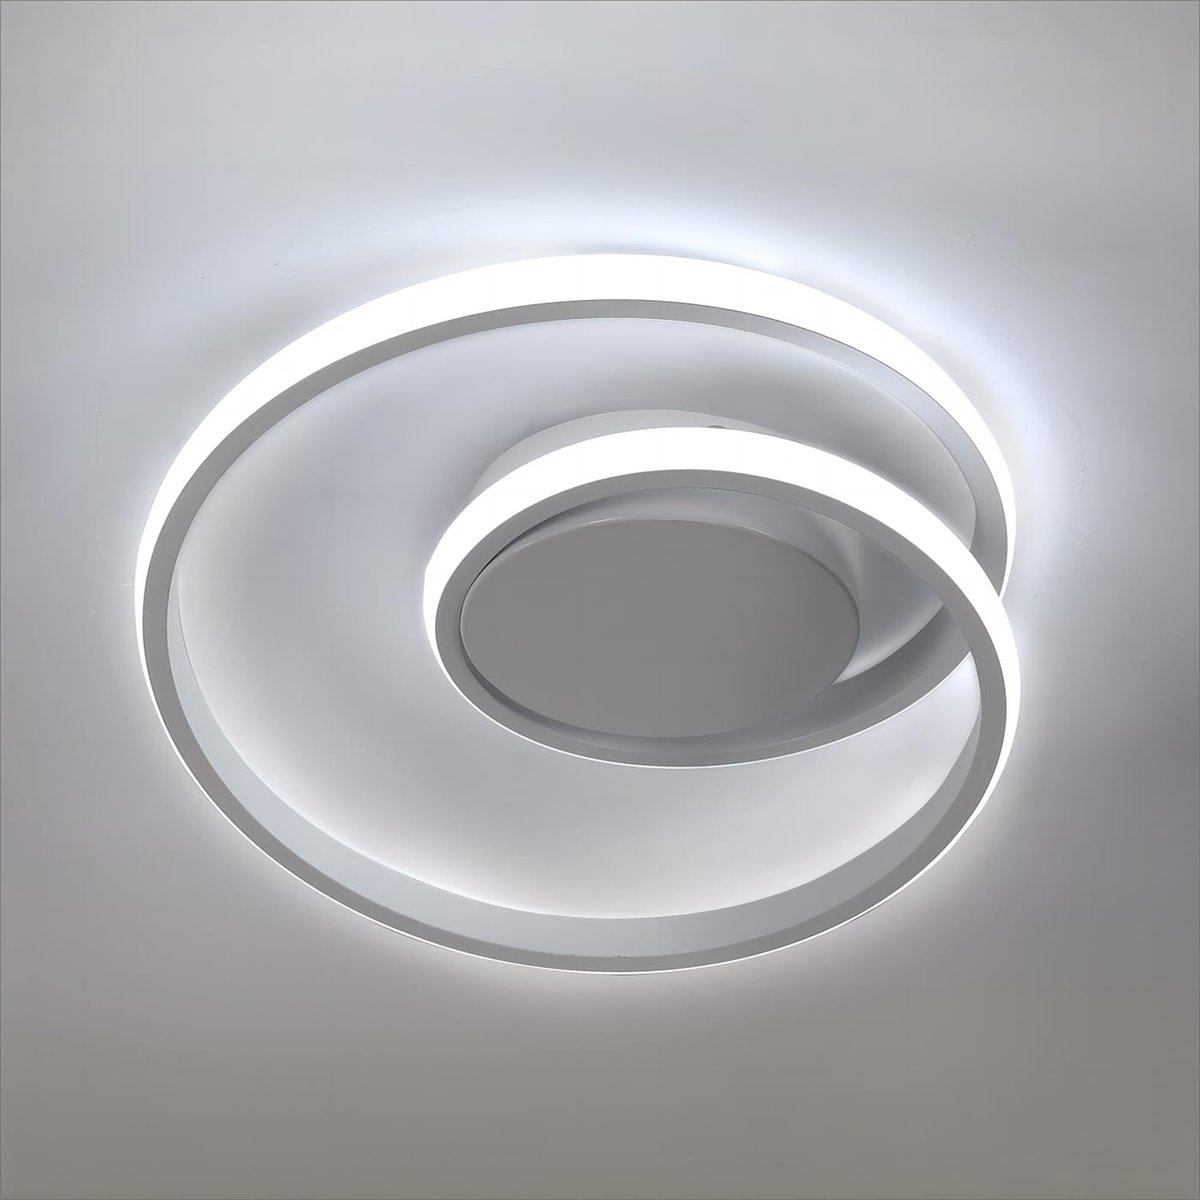 Delaveek-Moderne LED Plafondlamp- 30W 3375LM - Koel wit 6500K - Wit- Spiraalvormige -30CM